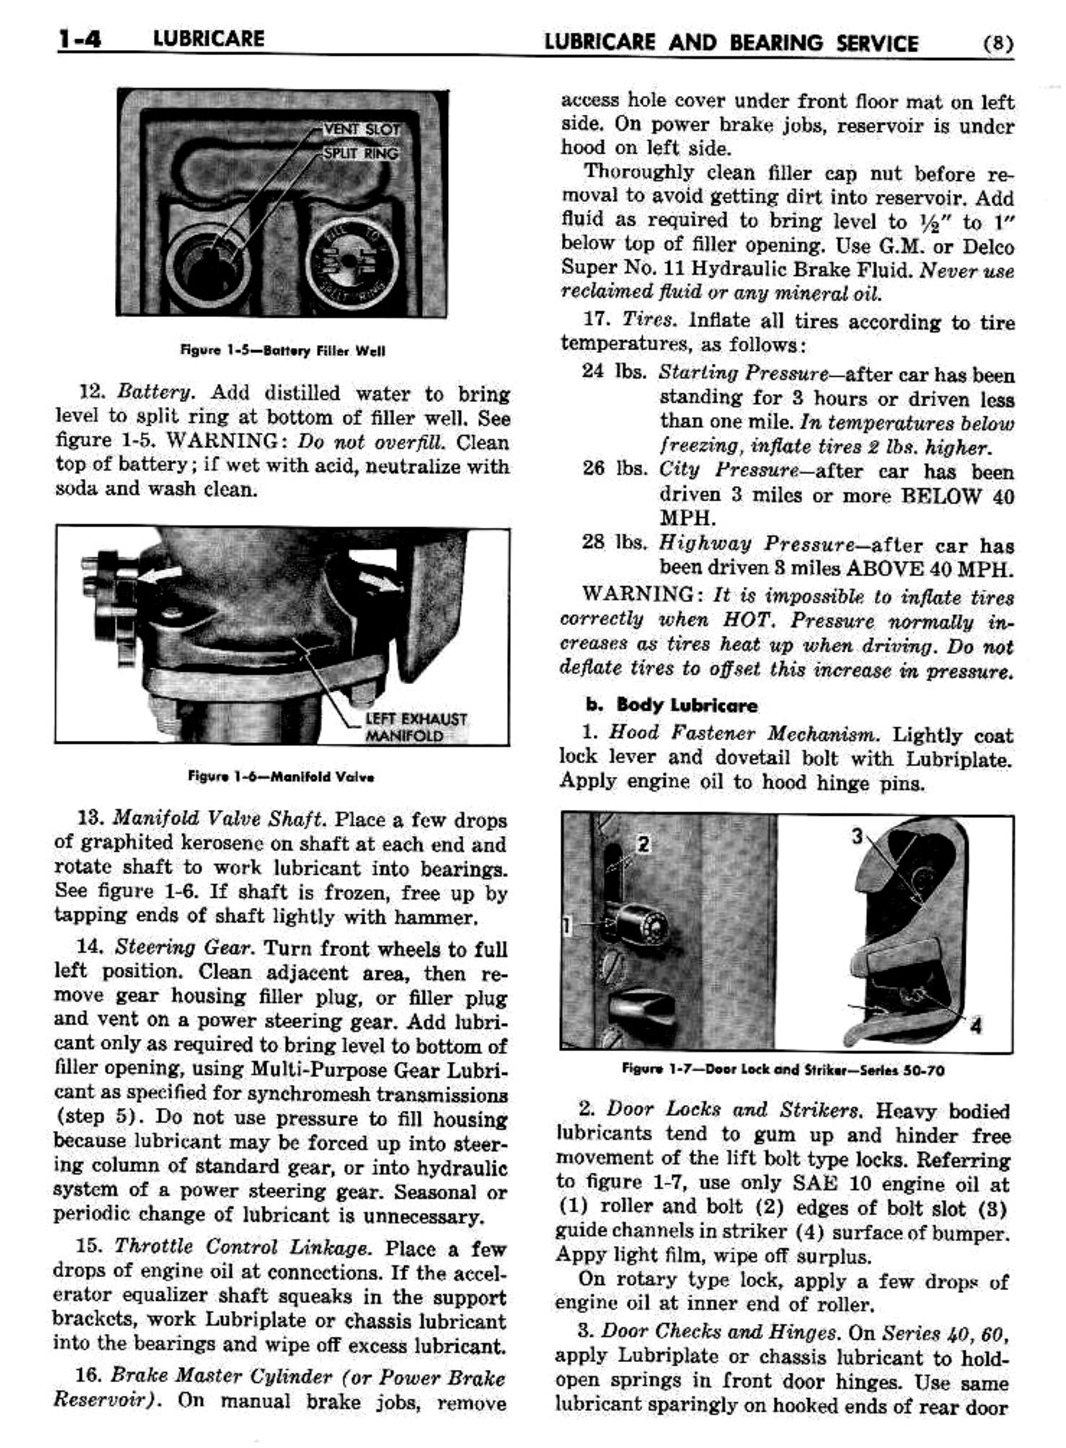 n_02 1954 Buick Shop Manual - Lubricare-004-004.jpg